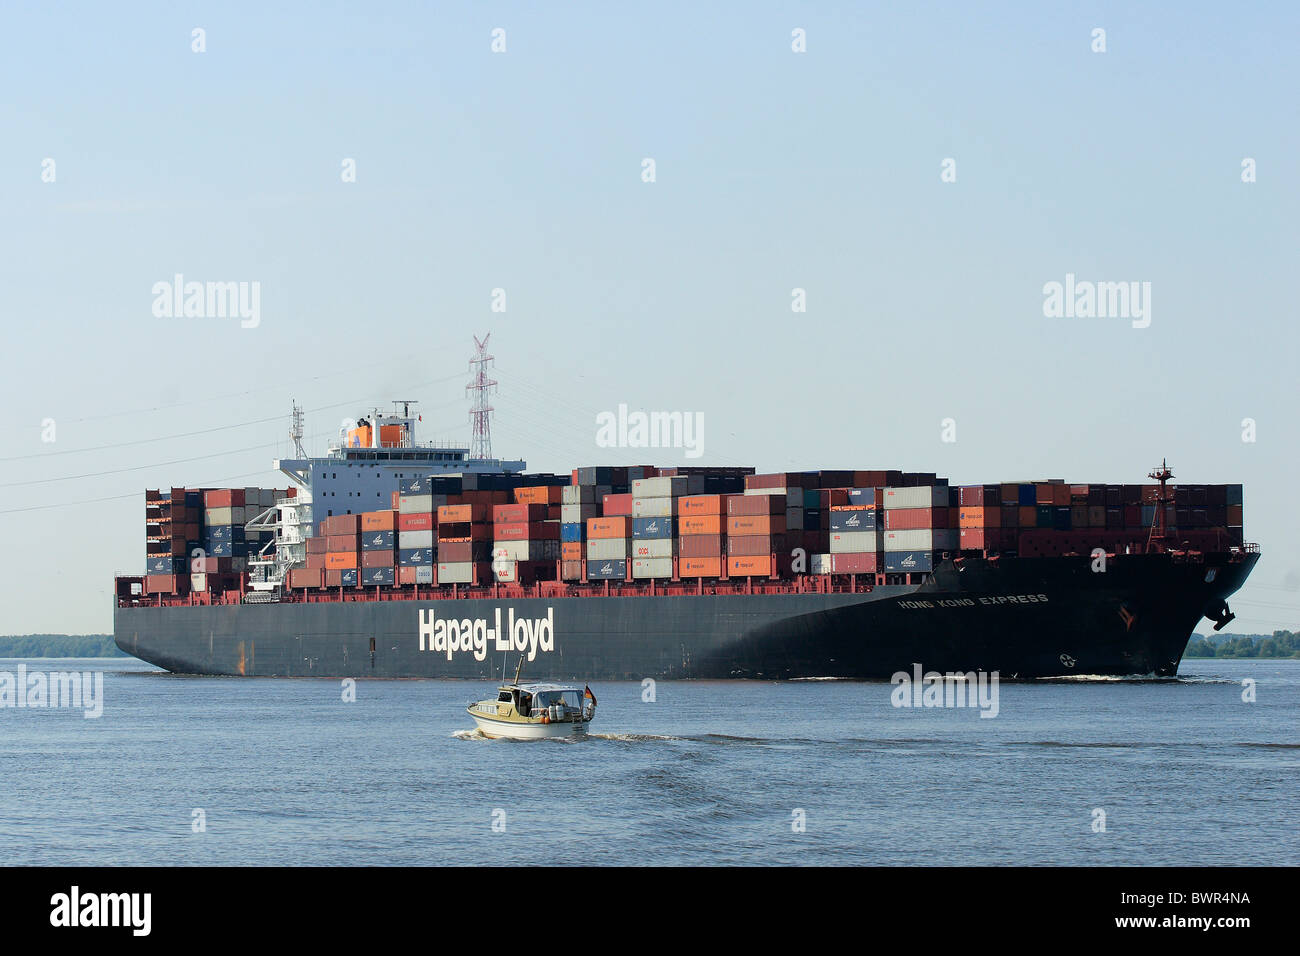 Germany Europe Hamburg harbor harbor port River Elbe Hong Kong Express Hapag-Lloyd Container ship freighter Stock Photo